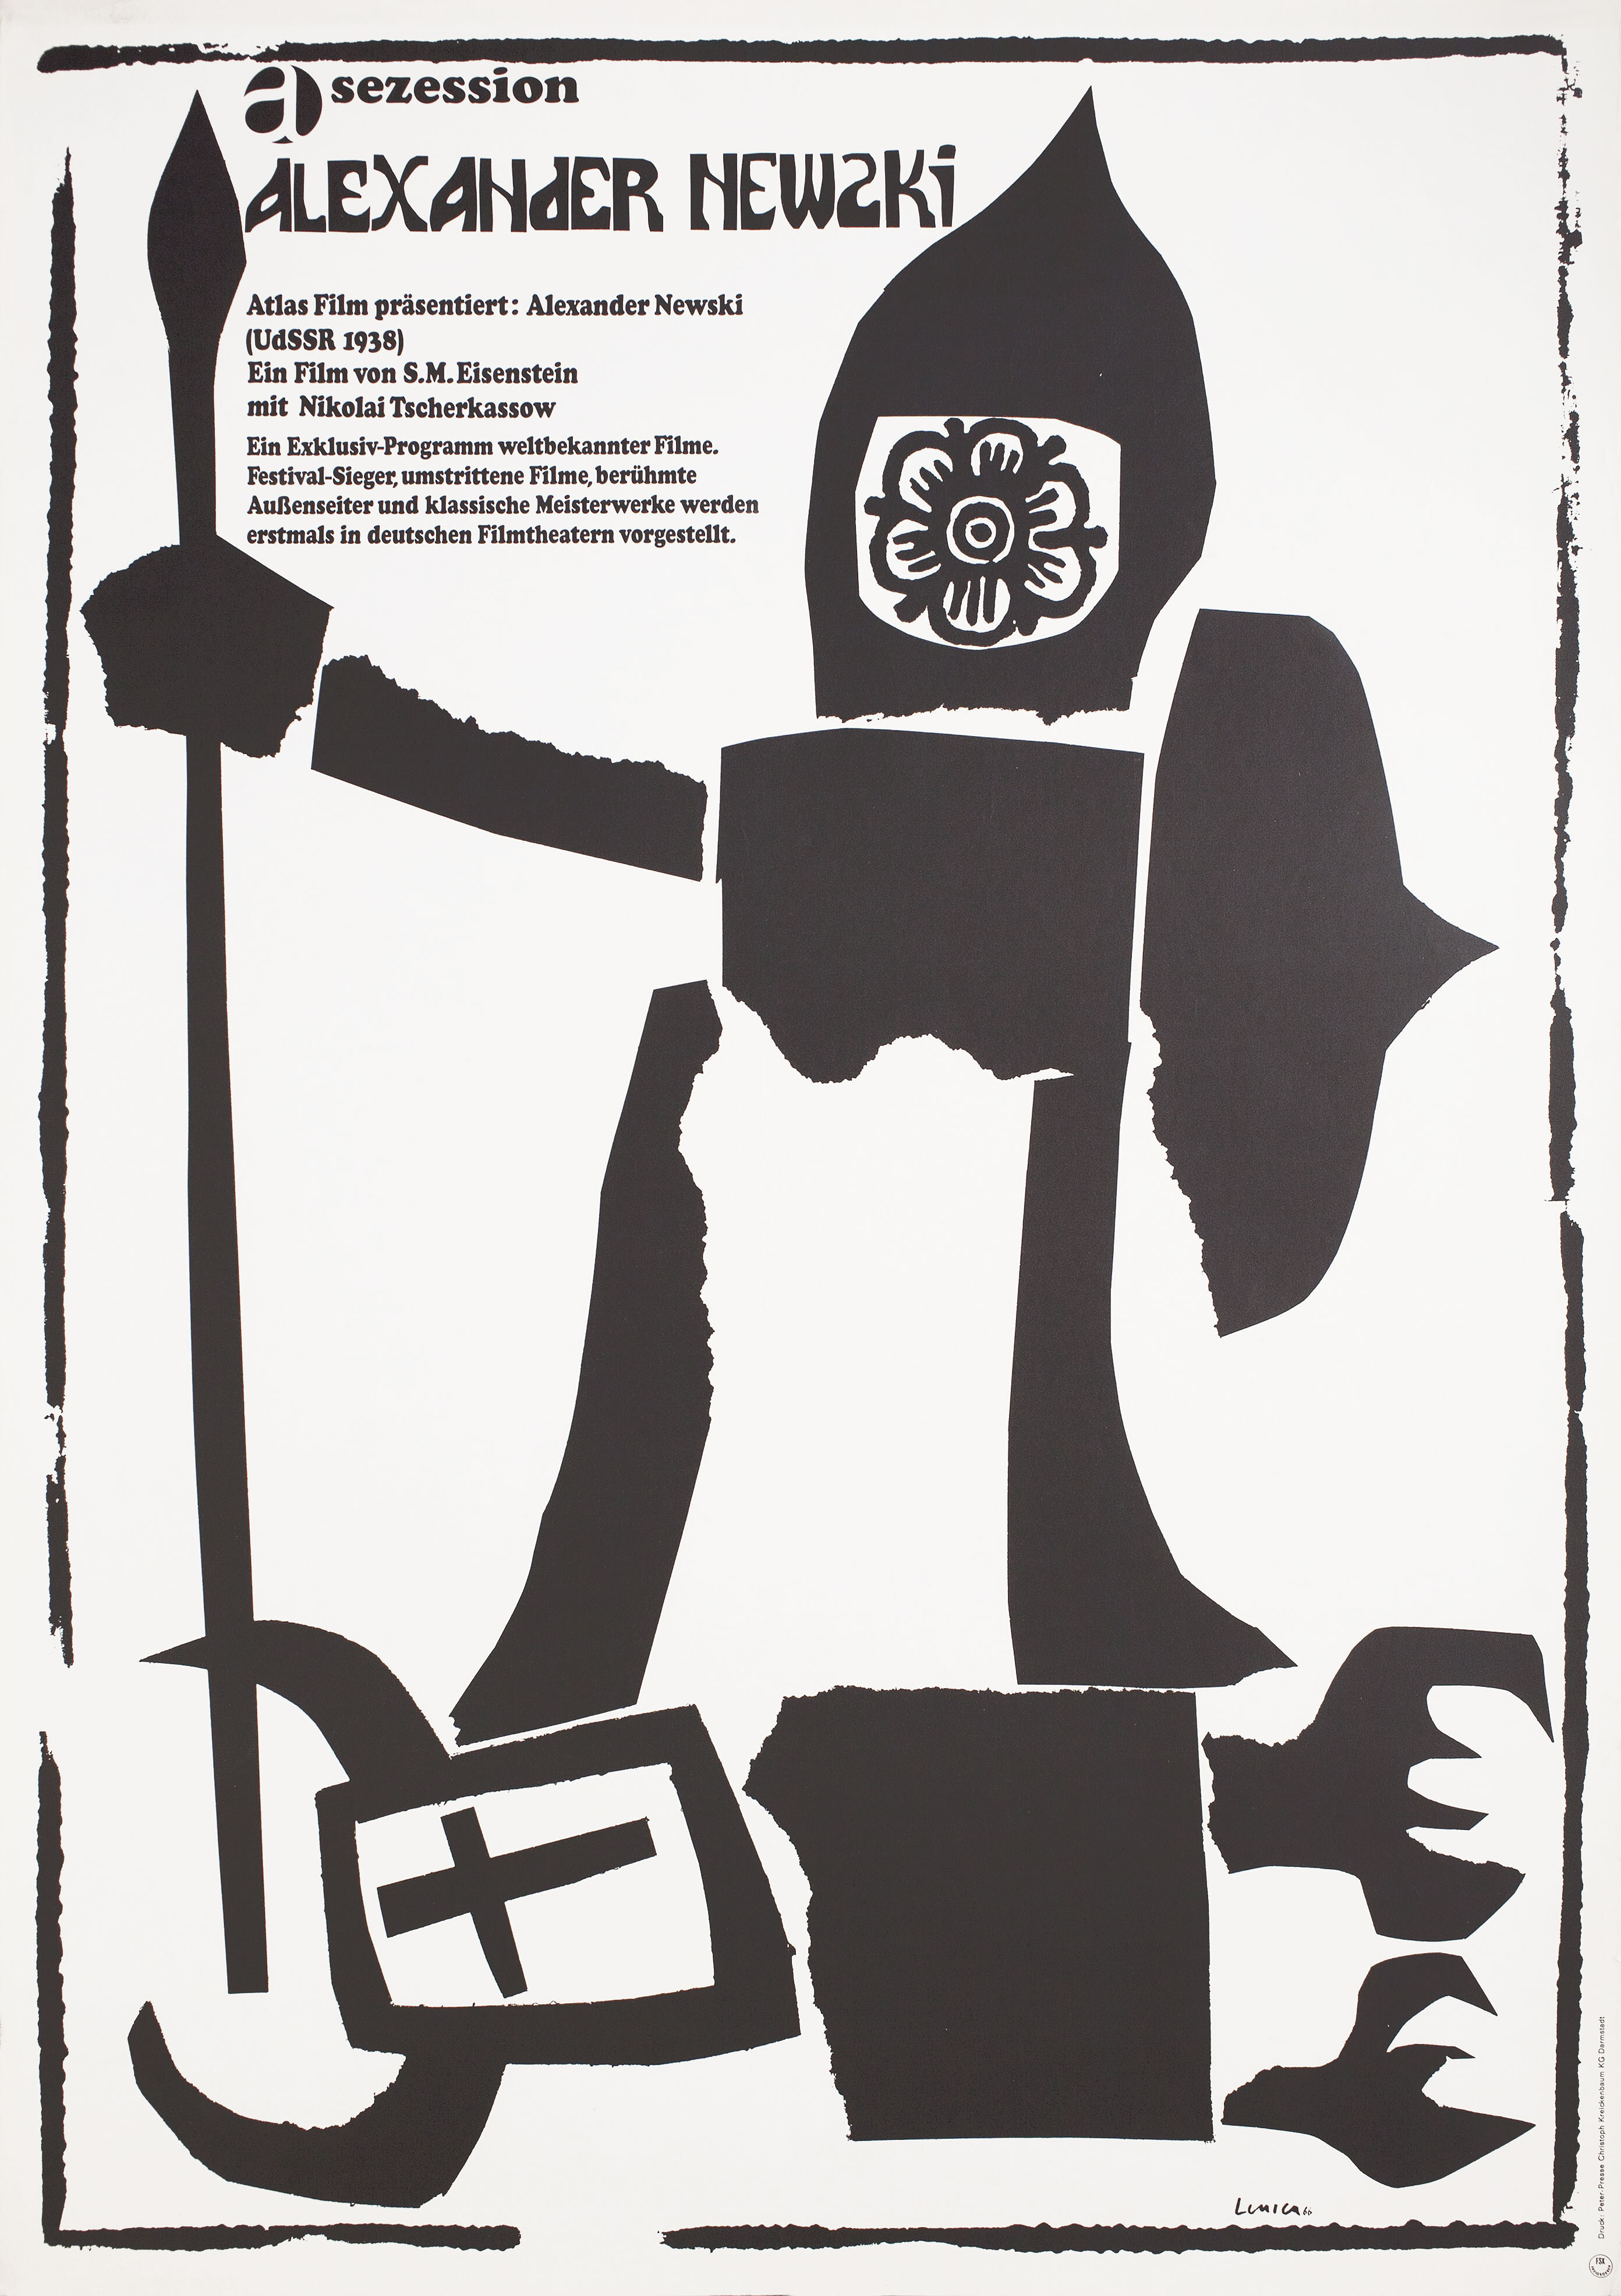 Александр Невский (режиссёр Сергей Михайлович Эйзенштейн, 1938), немецкий (ФРГ) постер к фильму, автор Ян Леница, 1965 год